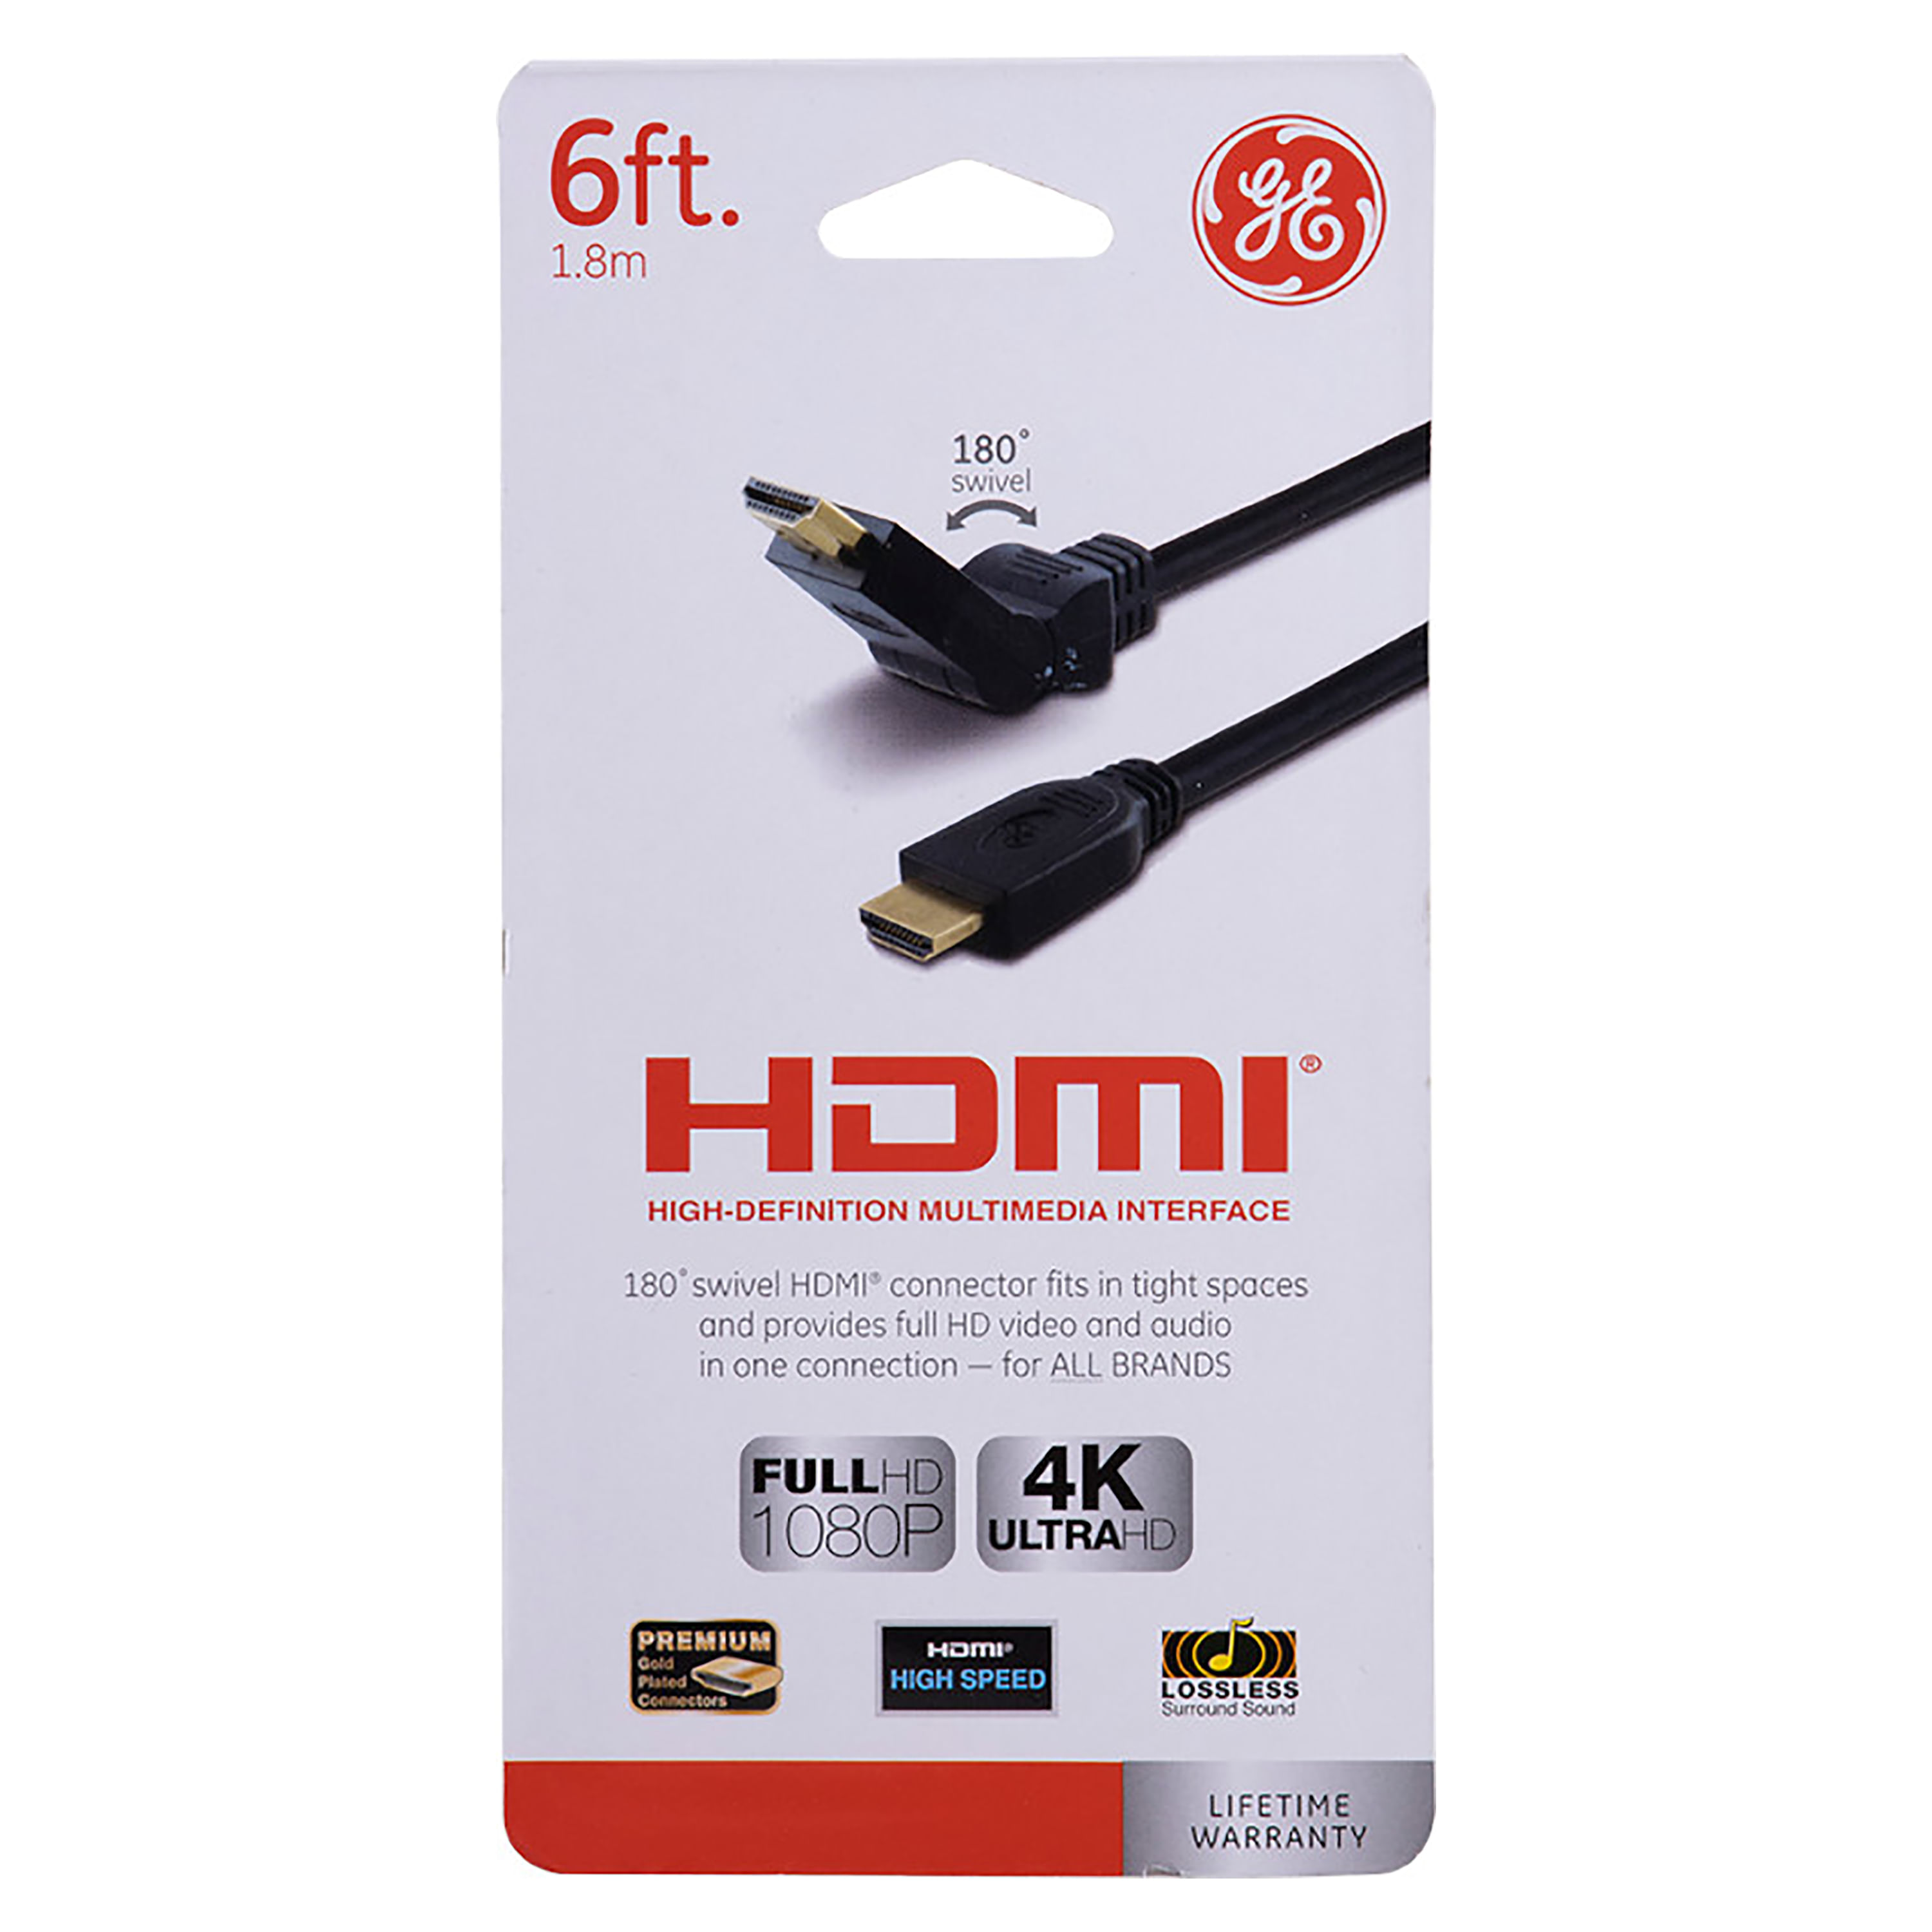 Papelería Modelo - Cable HDMI 5 metros - Domicilios Pereira Dosquebradas,  productos escolares, suministros oficina